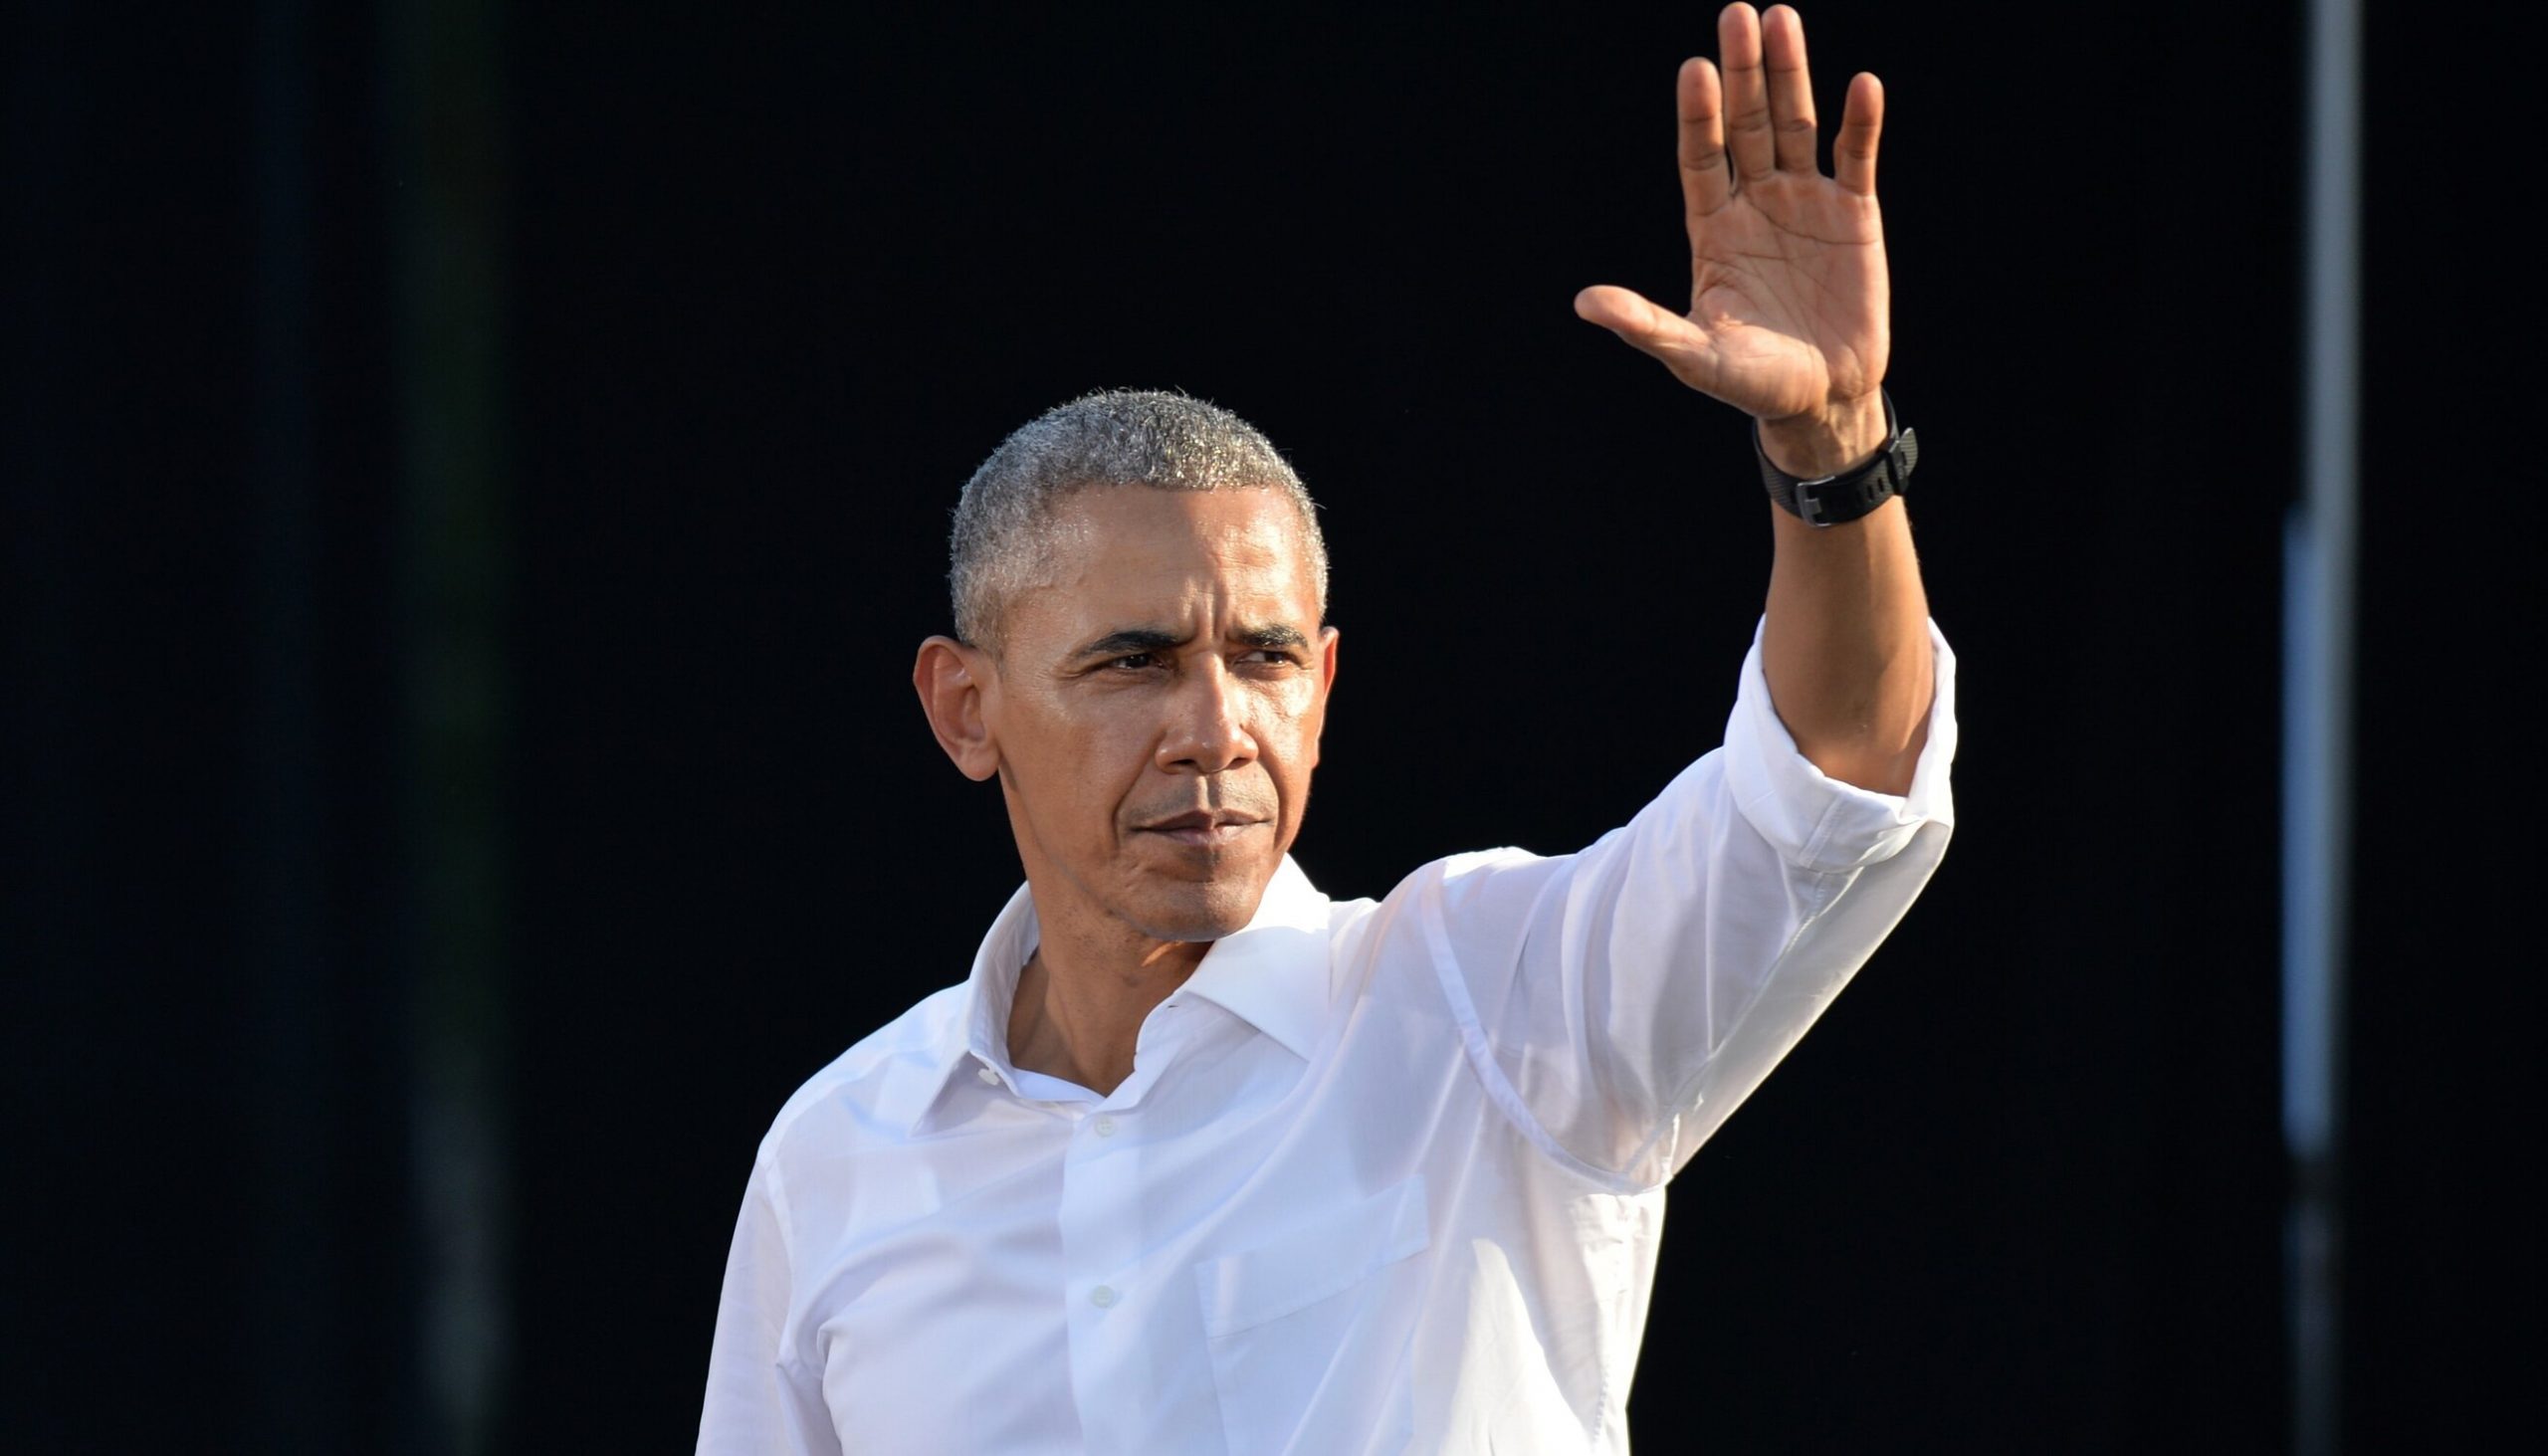 Barack Obama organizează o petrecere Covid-free pentru aniversarea de 60 de ani. Toți invitații vor fi testați și vor respecta toate măsurile în vigoare